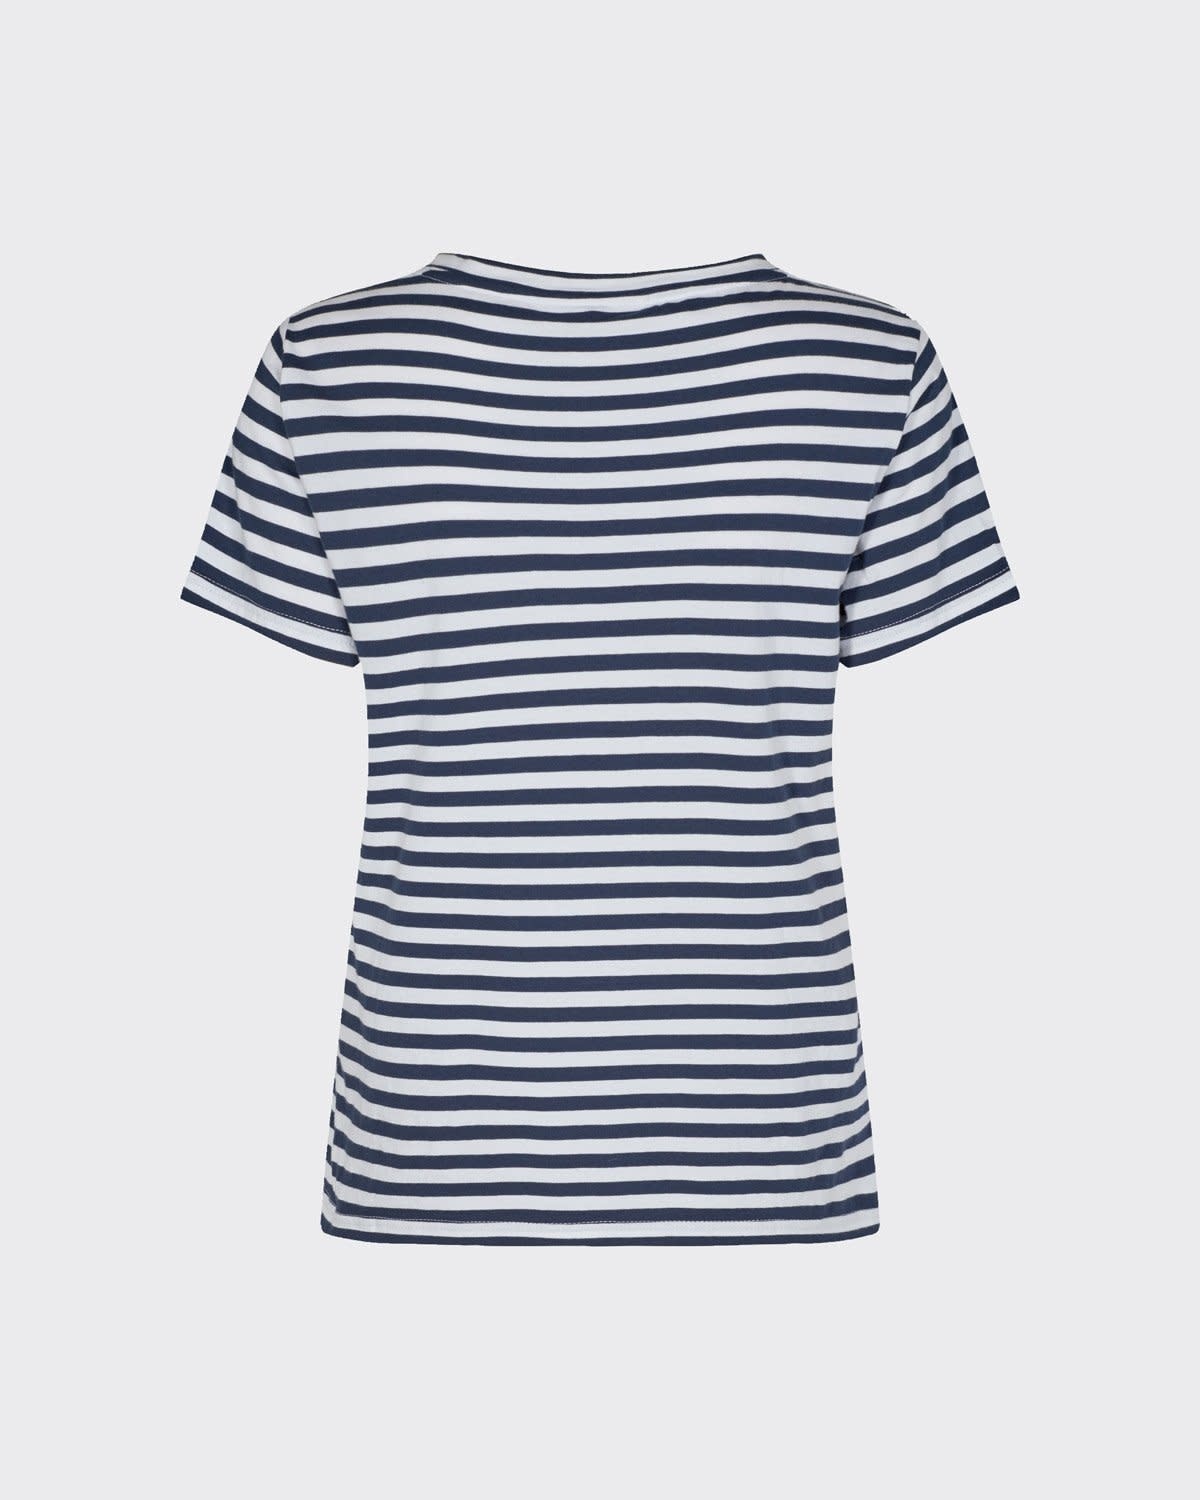 Minimum Minimum, Gabriella T-Shirt, navy blazer, S